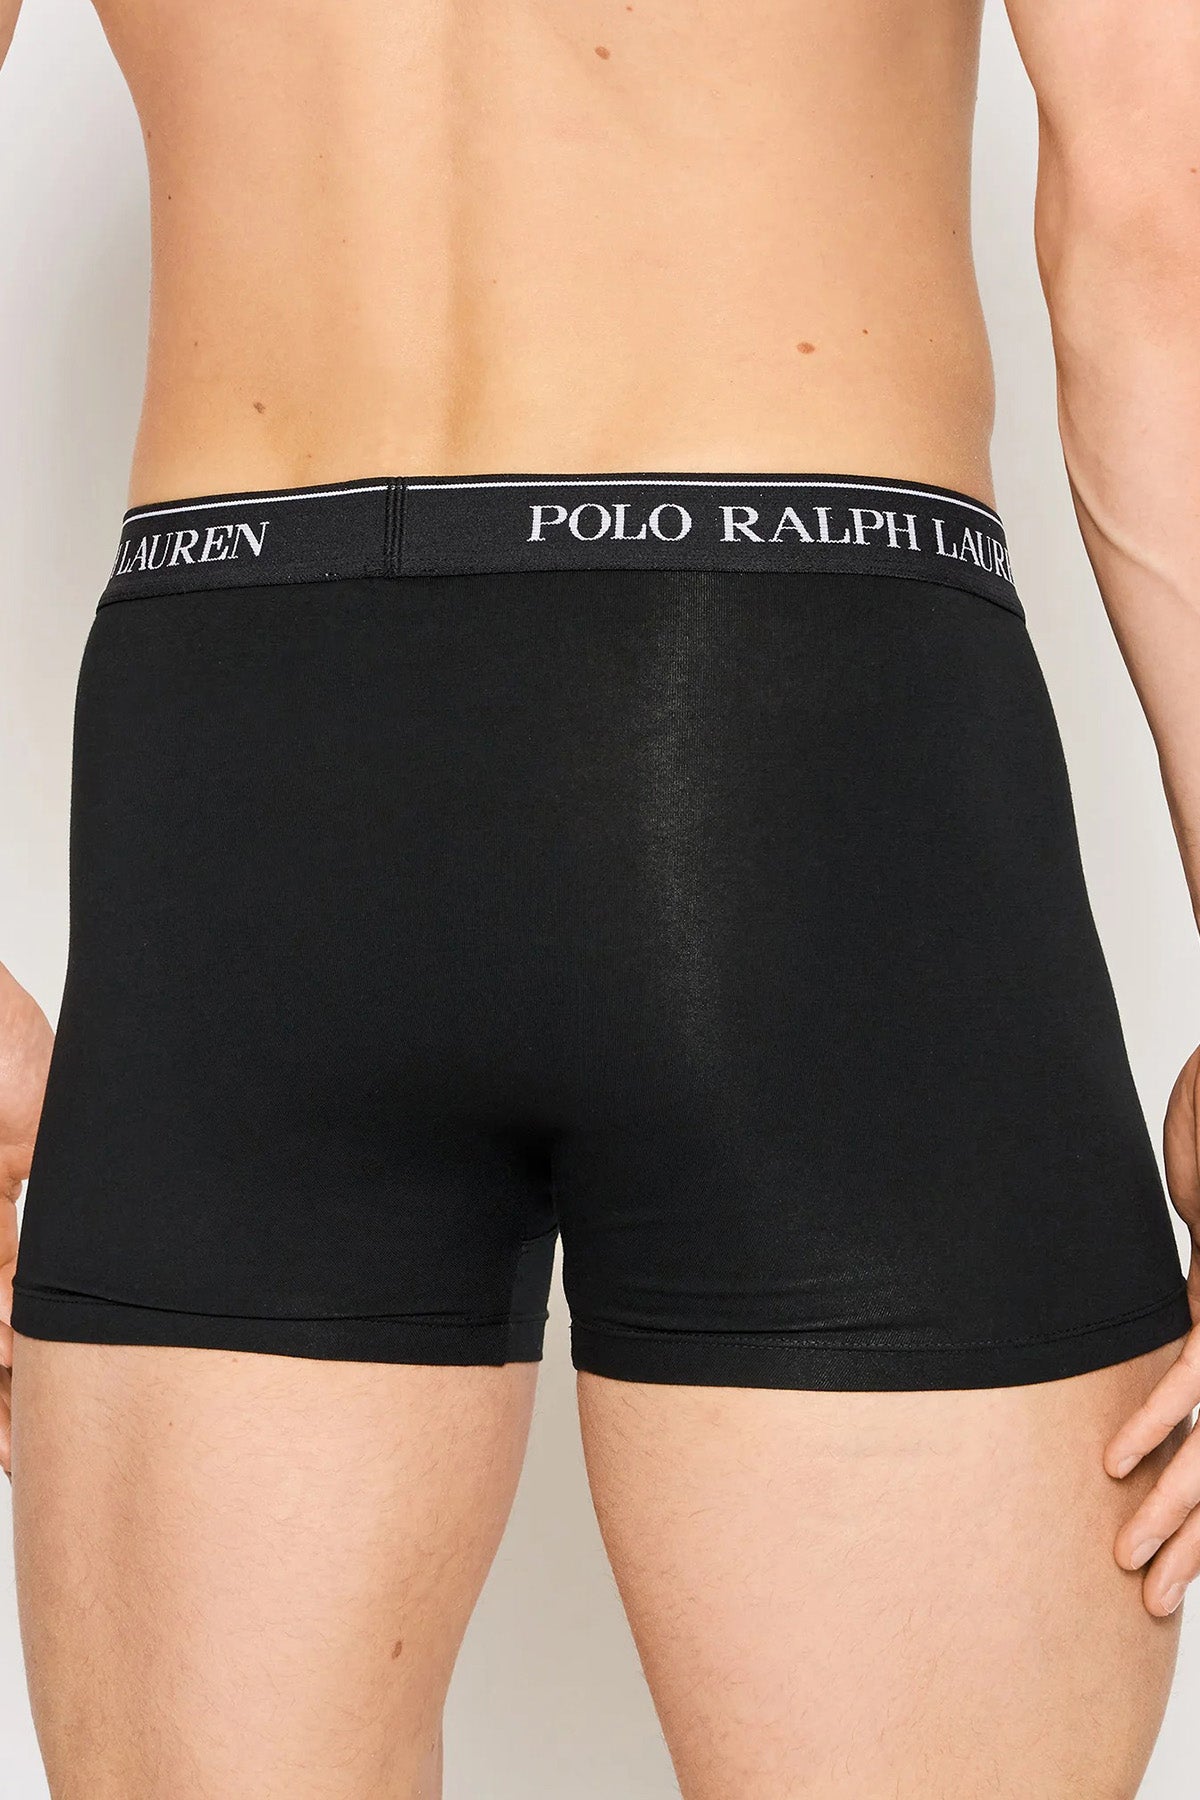 Polo Ralph Lauren 5'li Paket Streç Pamuklu Boxer